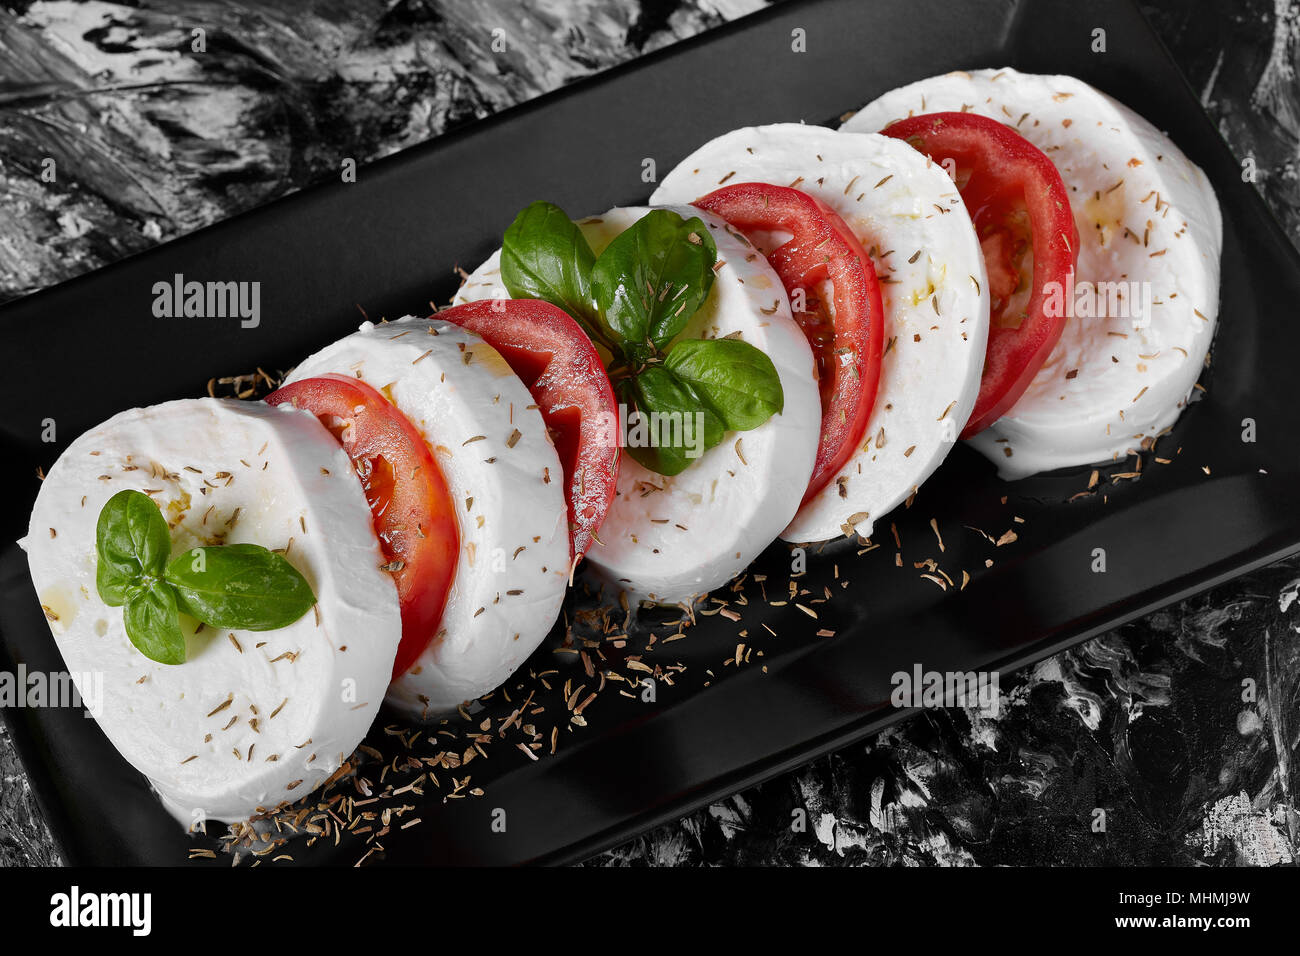 Italienisch typische Platte namens Caprese mit frischem Buffalo Mozzarella,  Tomaten, Basilikum, Olivenöl Stockfotografie - Alamy